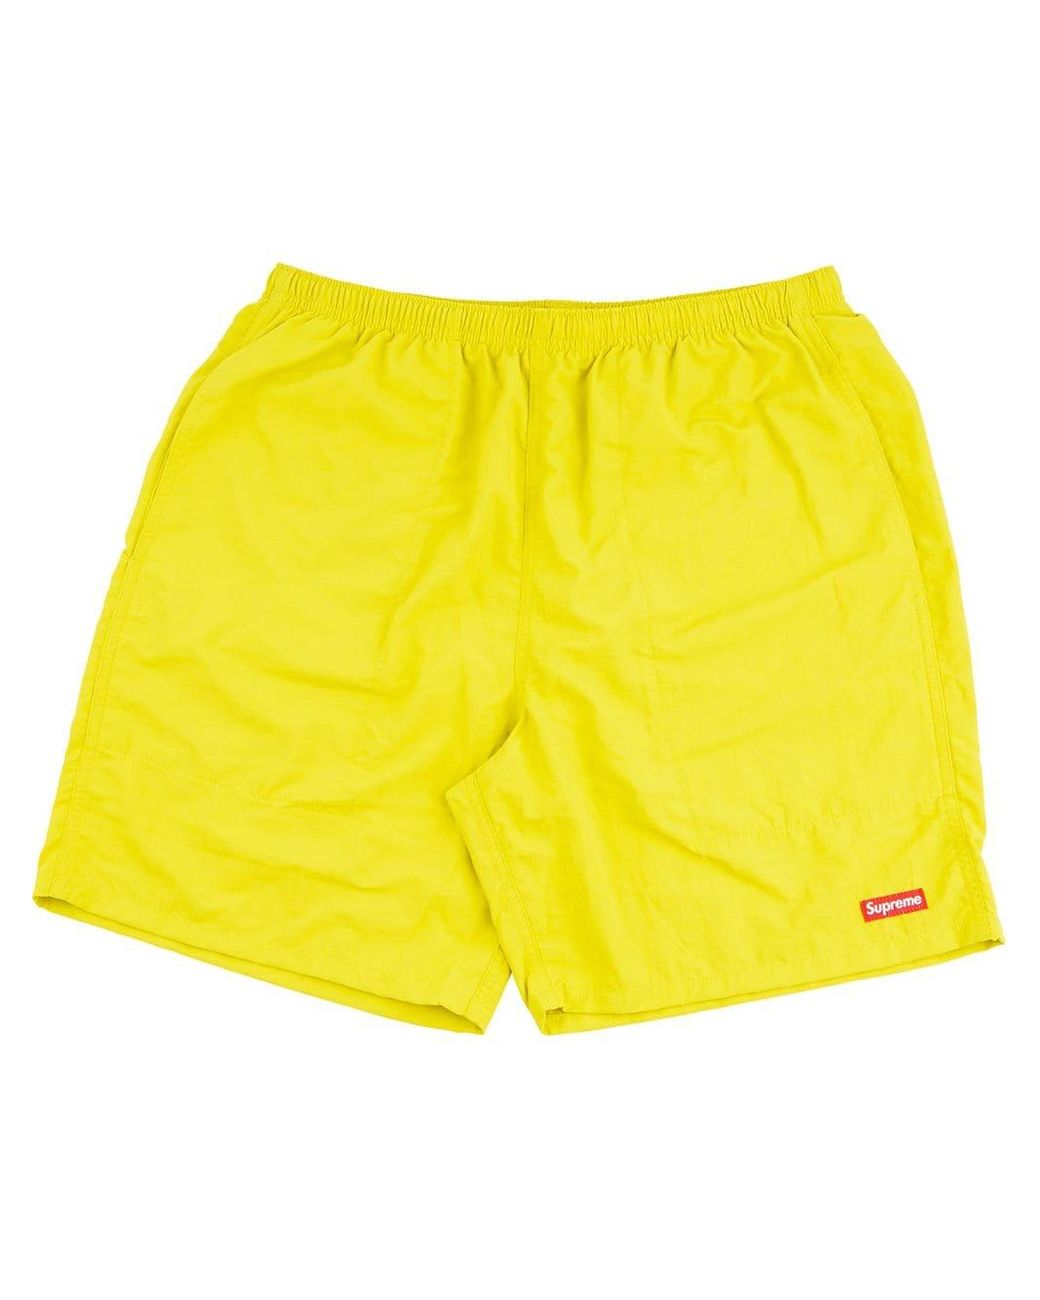 Supreme Men's Yellow Box-logo Swim Shorts